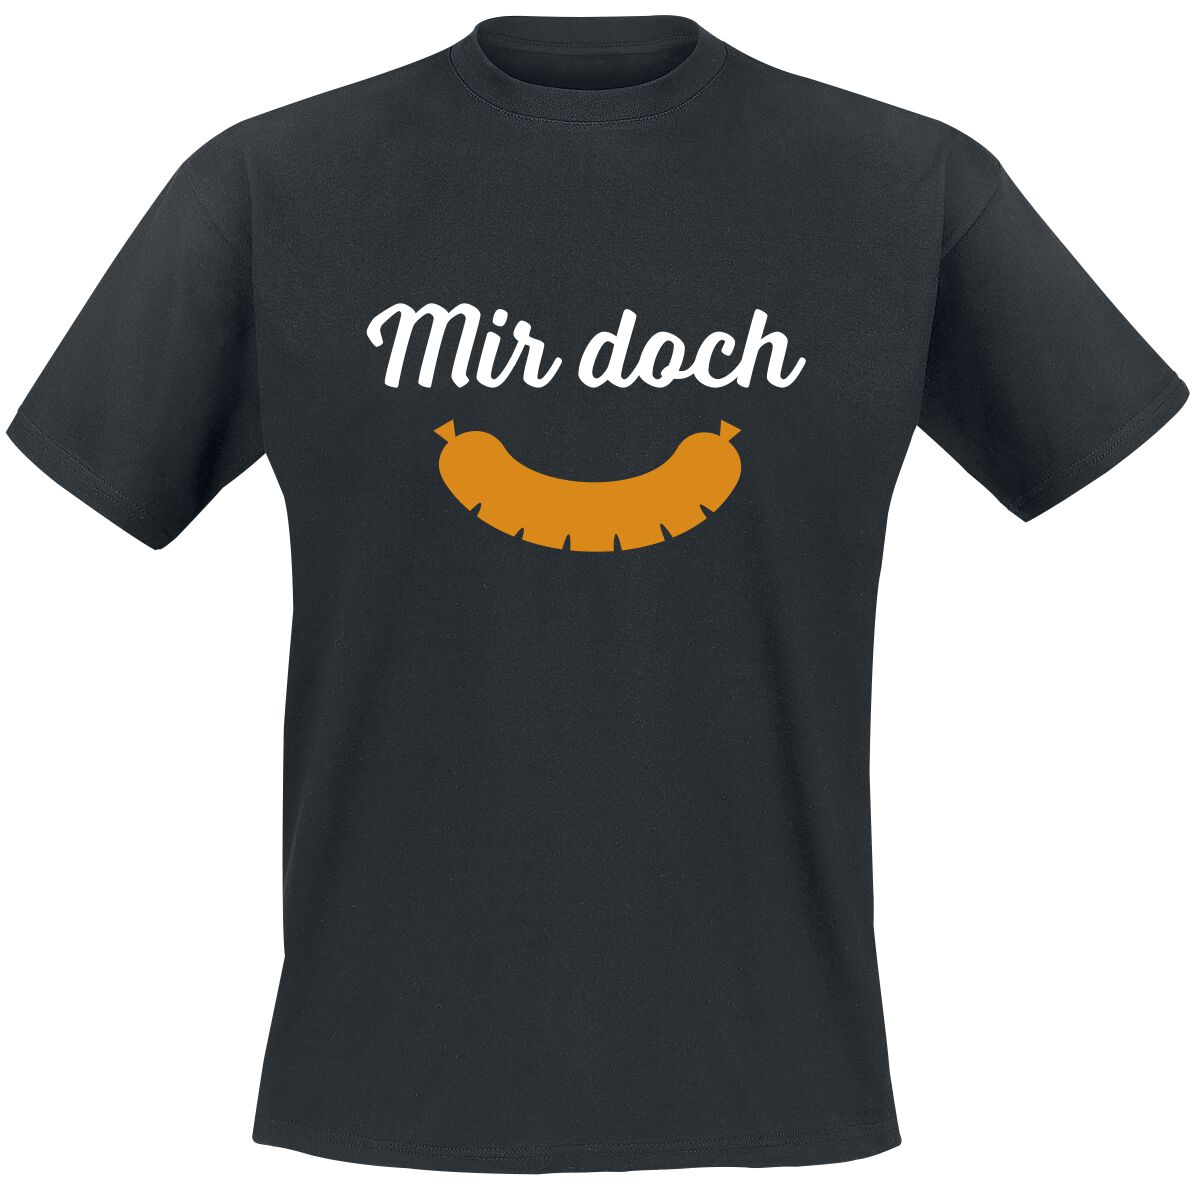 Food T-Shirt - Mir doch Wurst - M bis 5XL - für Männer - Größe 4XL - schwarz